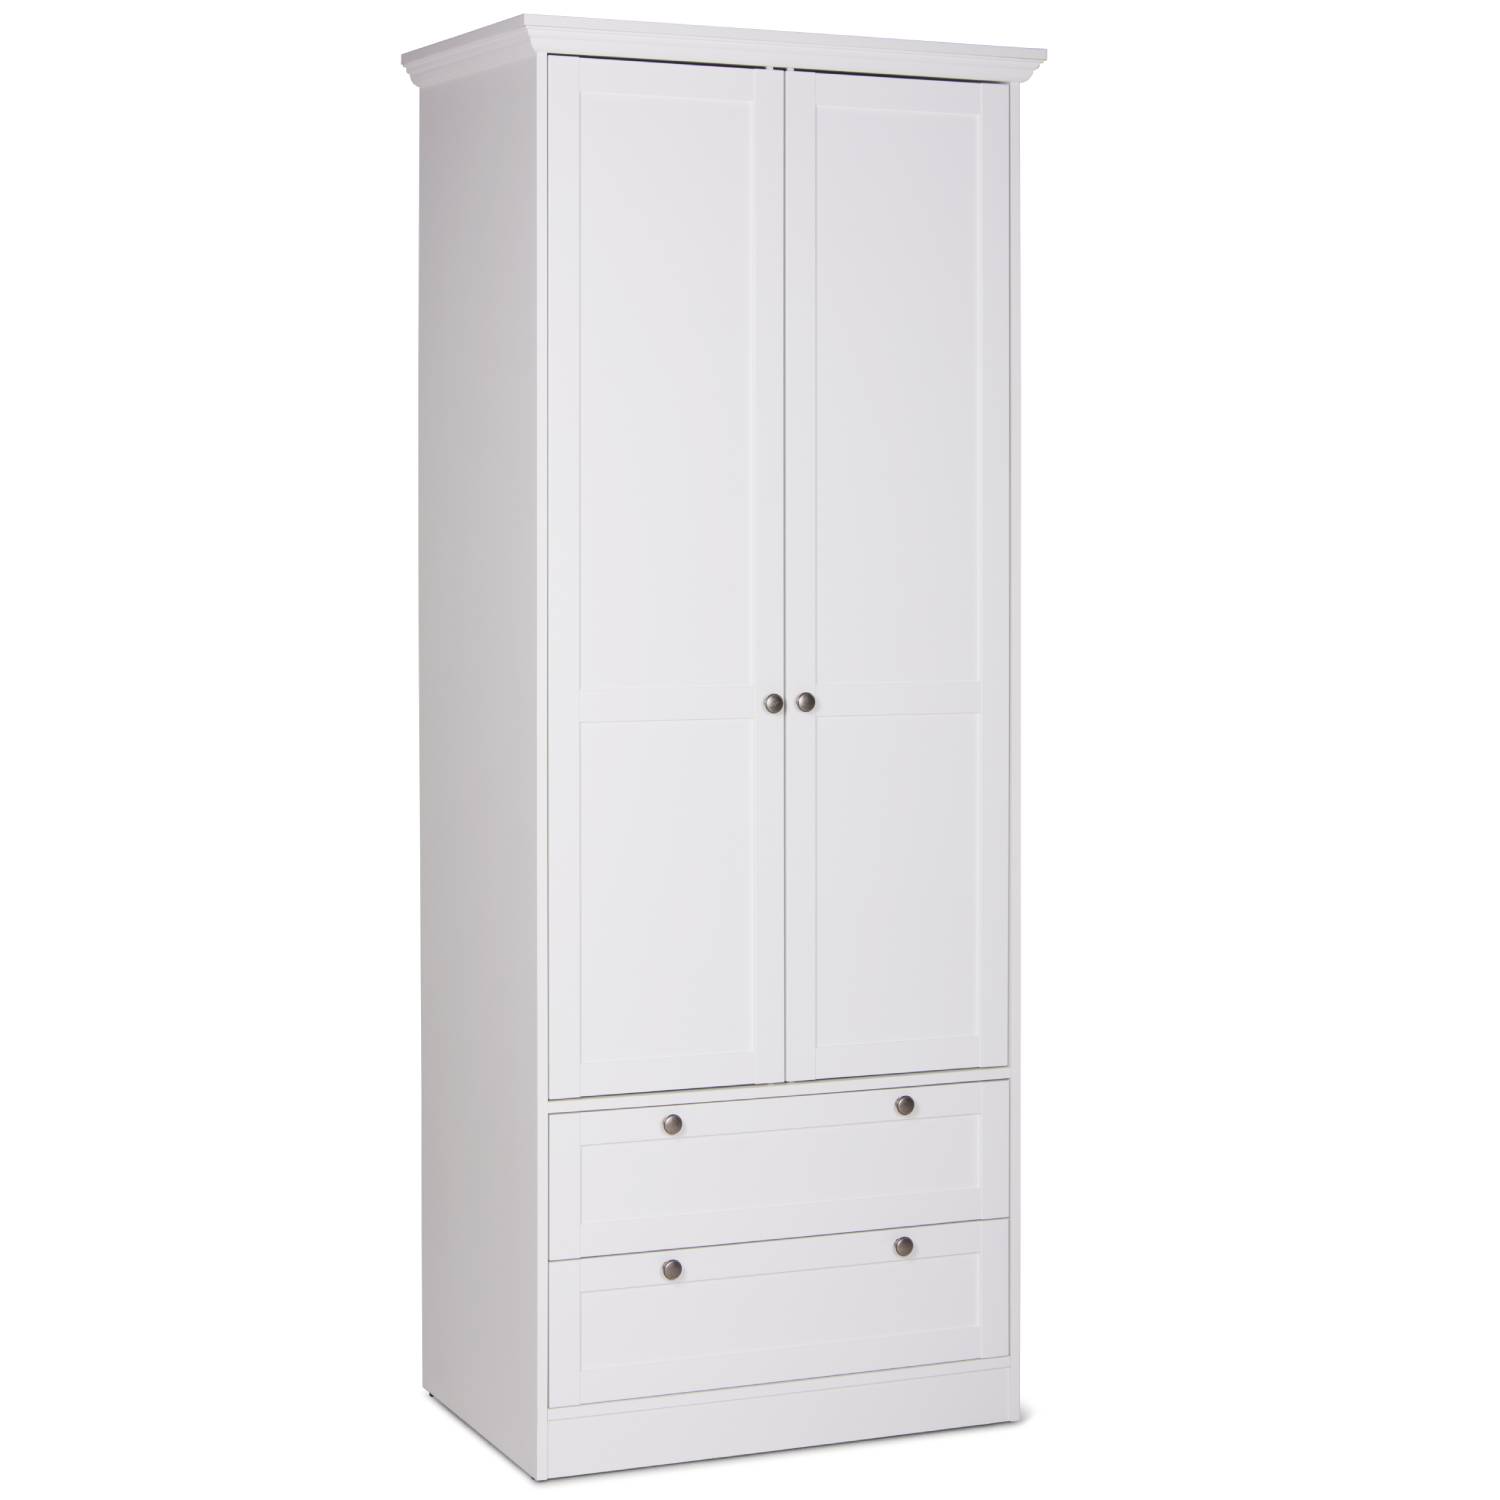 Kleiderschrank Weiß Garderobe Holz Schrank Massiv 2 Türen Garderobenschrank Mehrzweckschrank